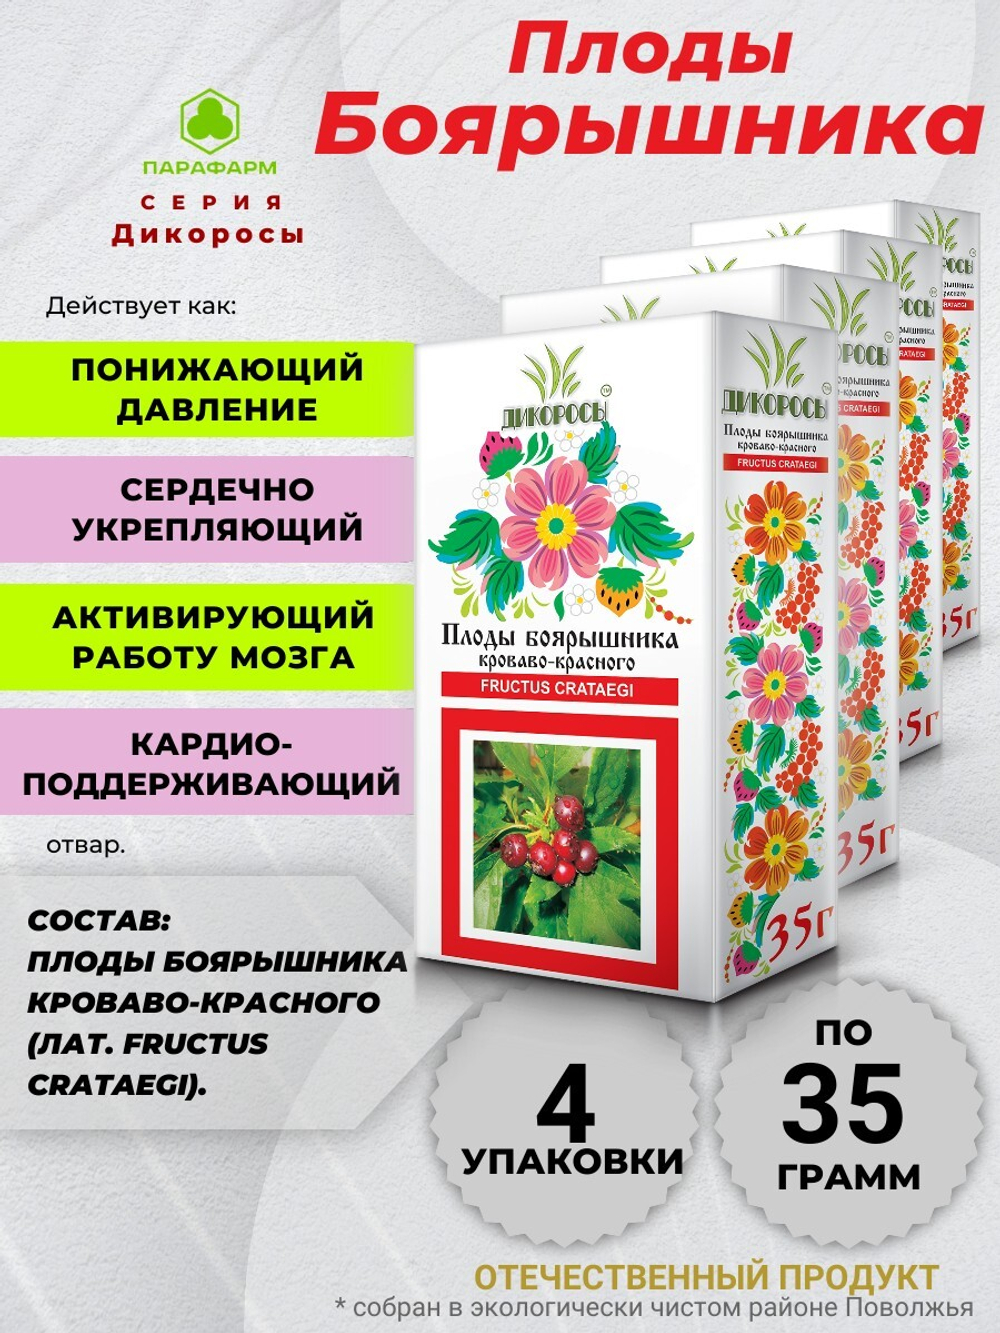 Плоды боярышника (кроваво-красного) х 4 упаковки